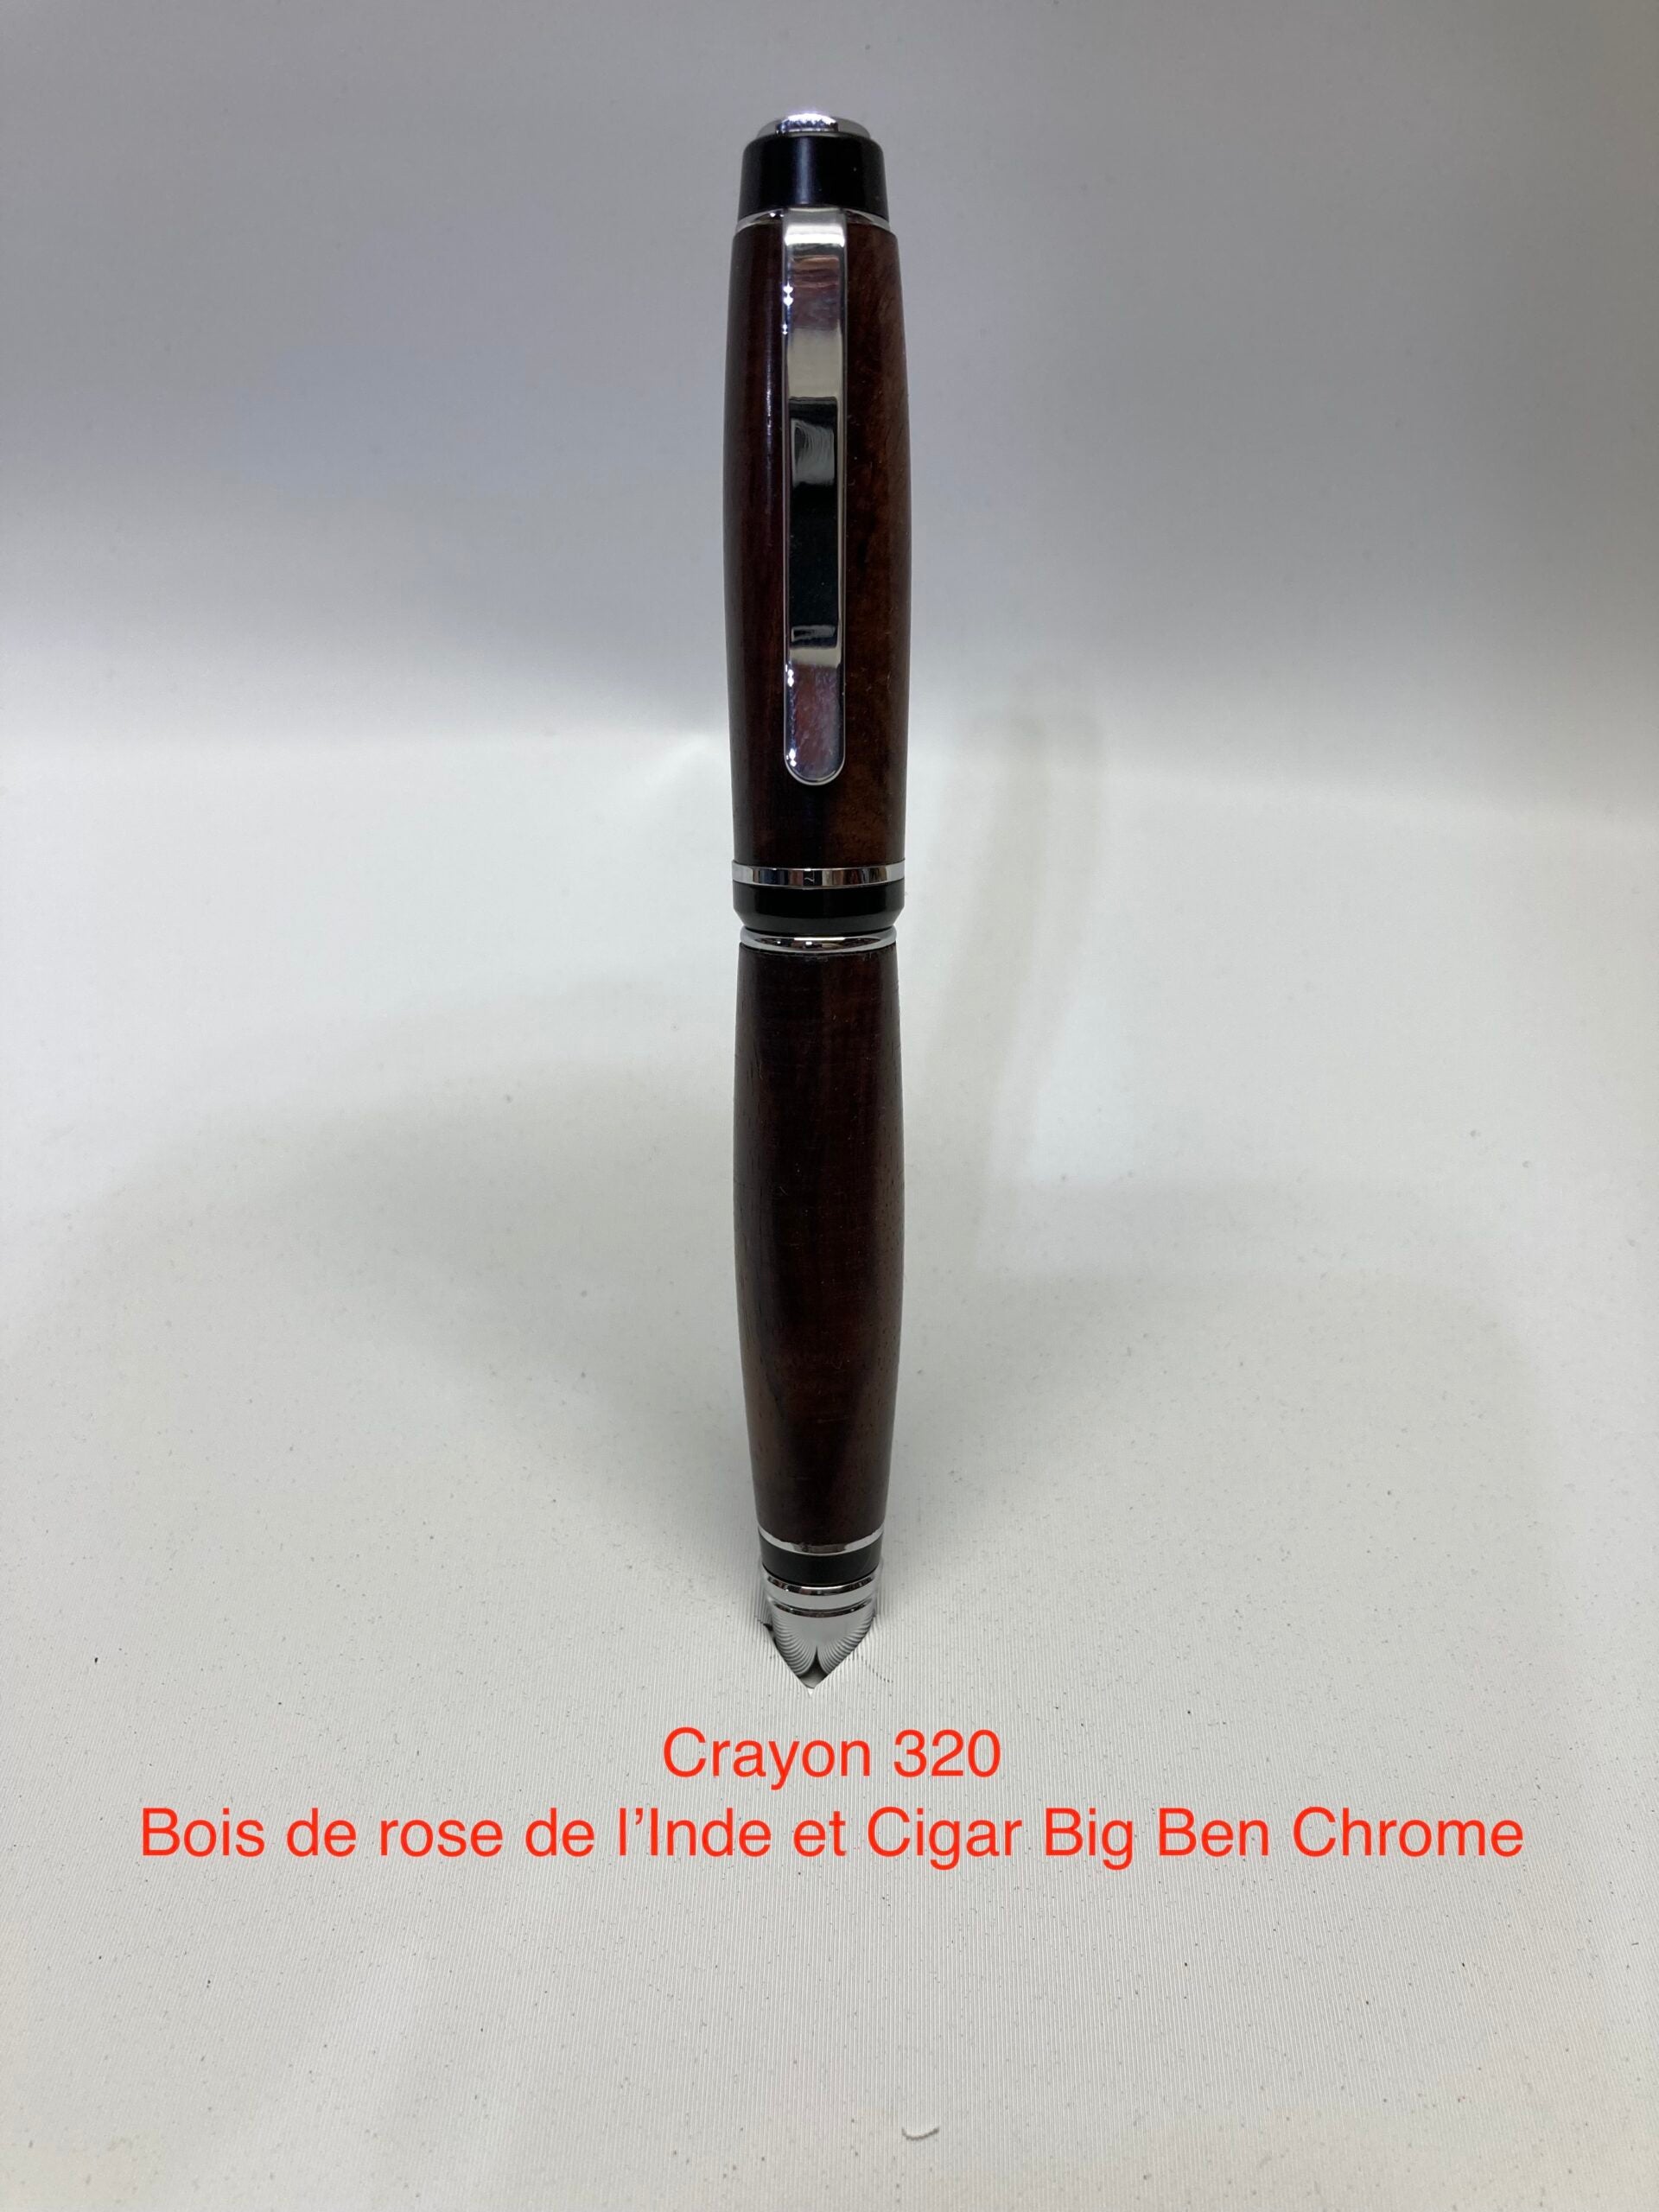 Big Ben cigar, Indian rosewood, cigar and chrome